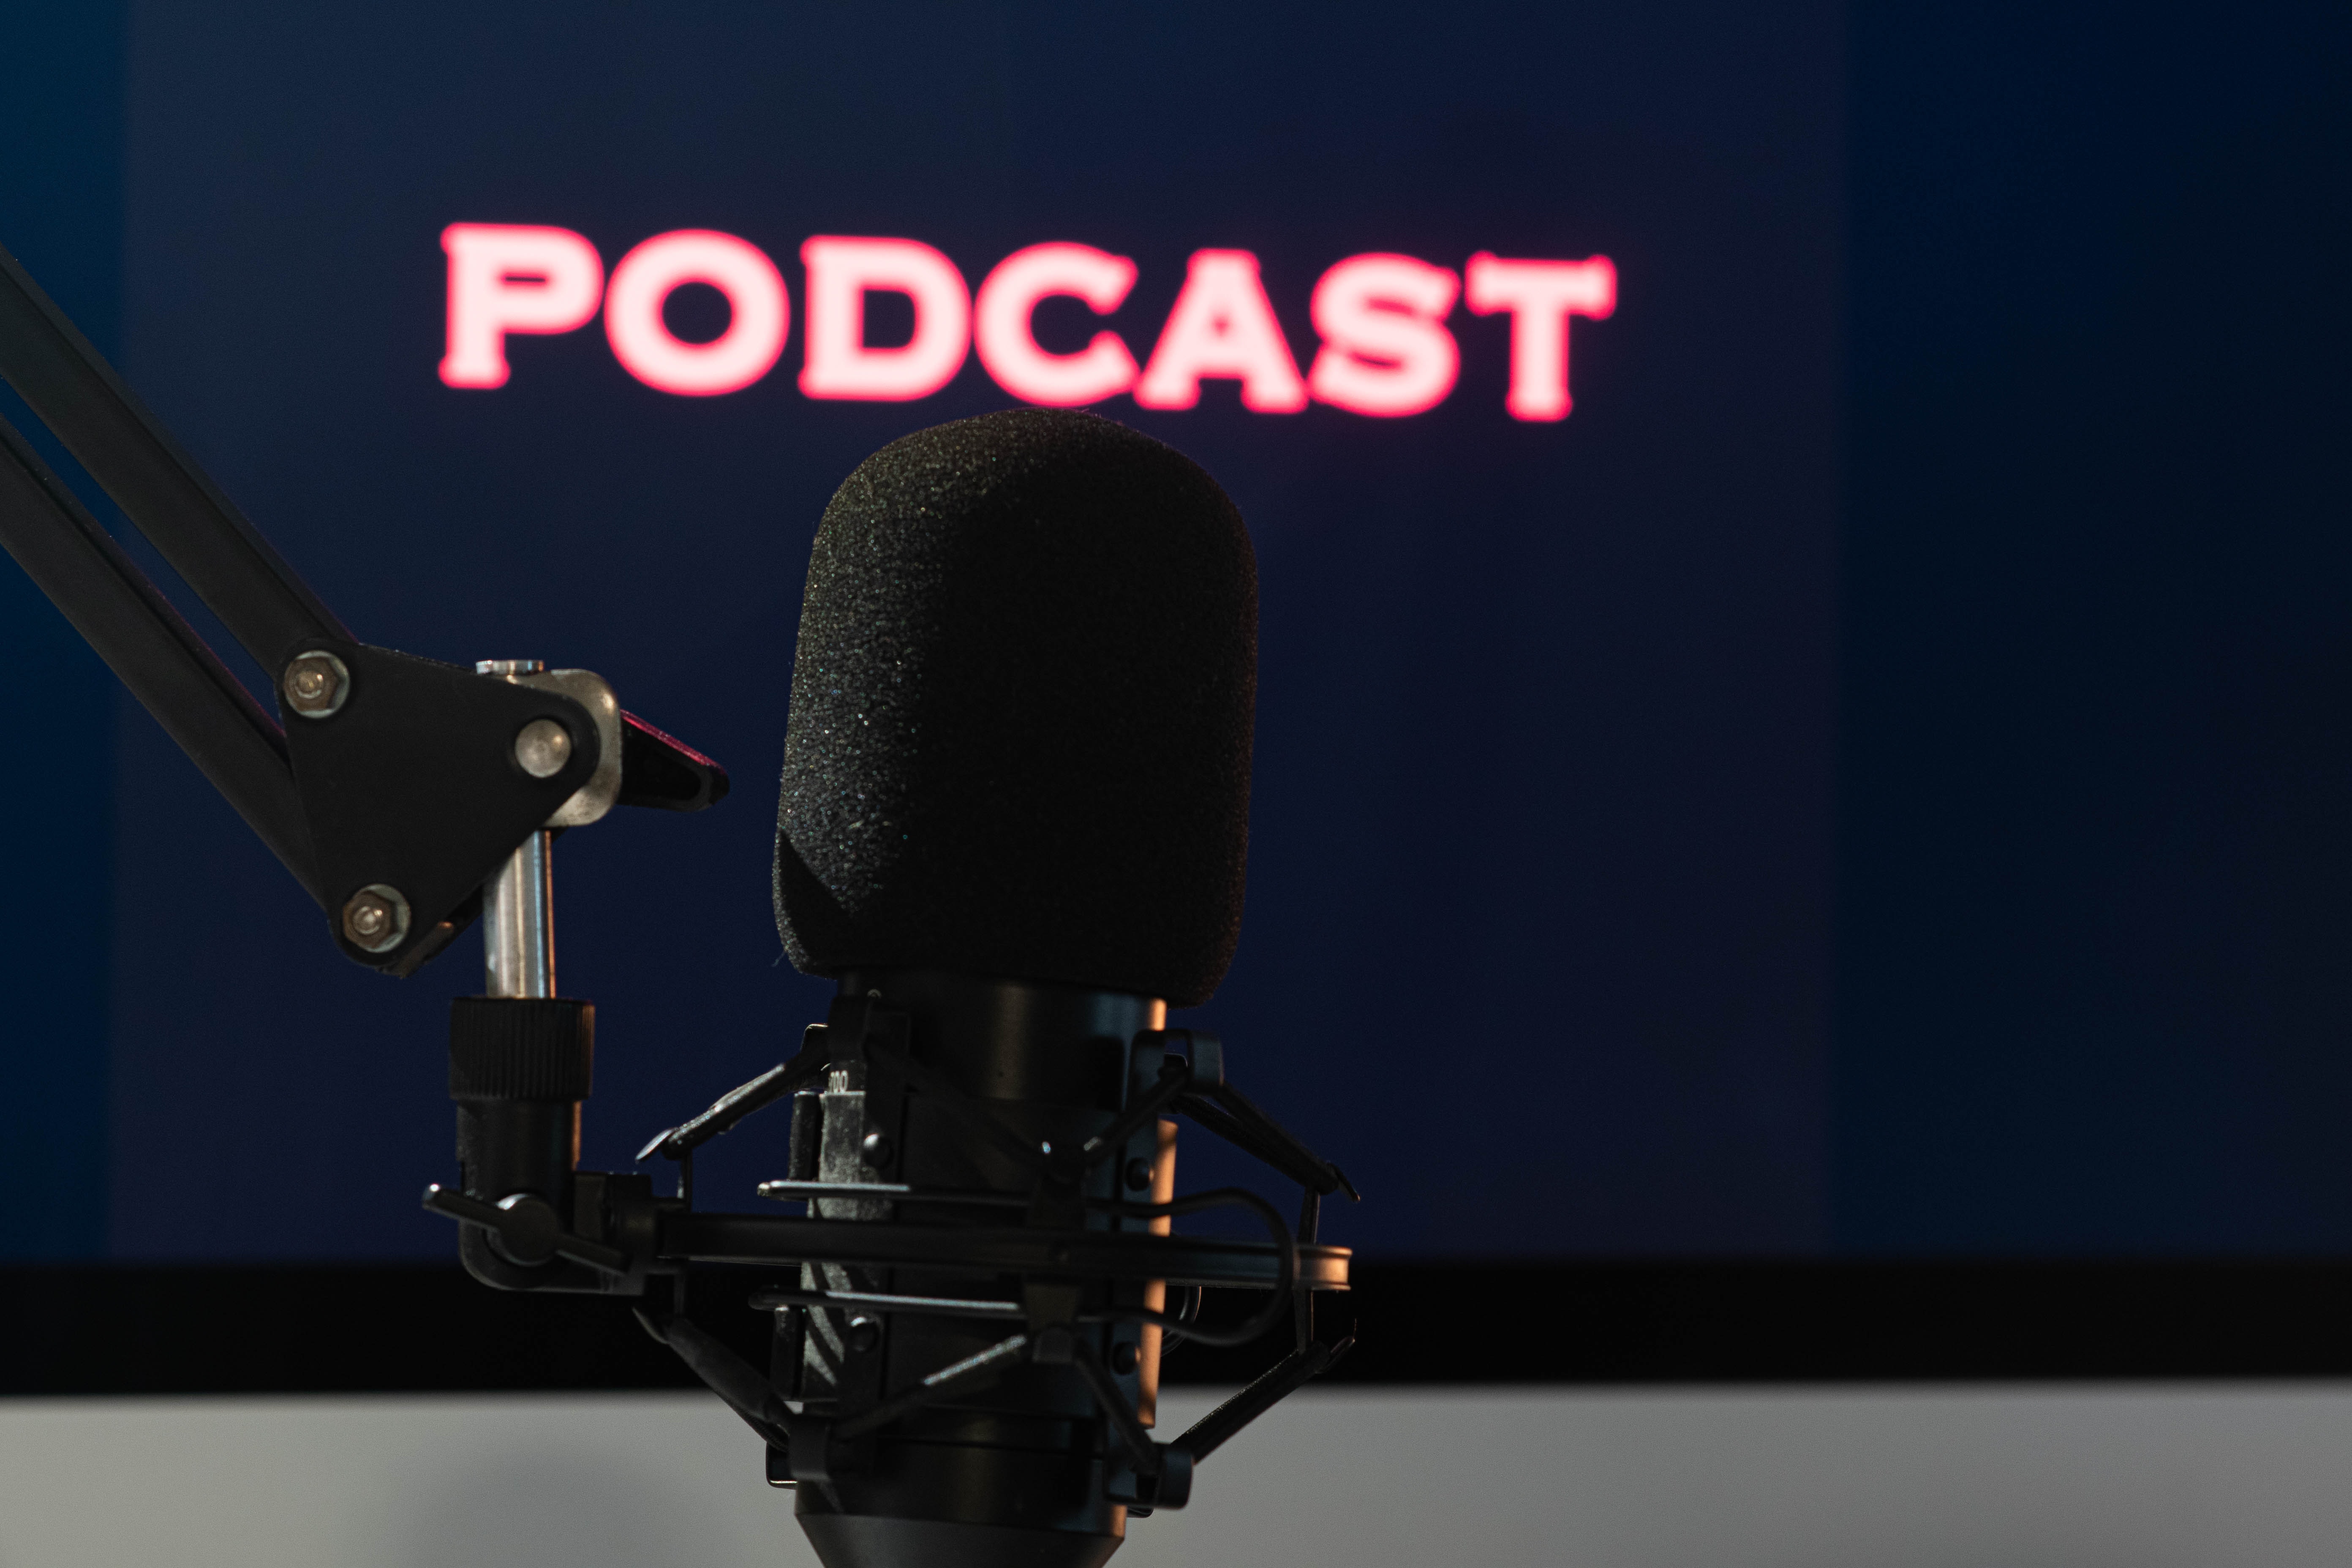 Podcast: nuova opportunità per la tua azienda